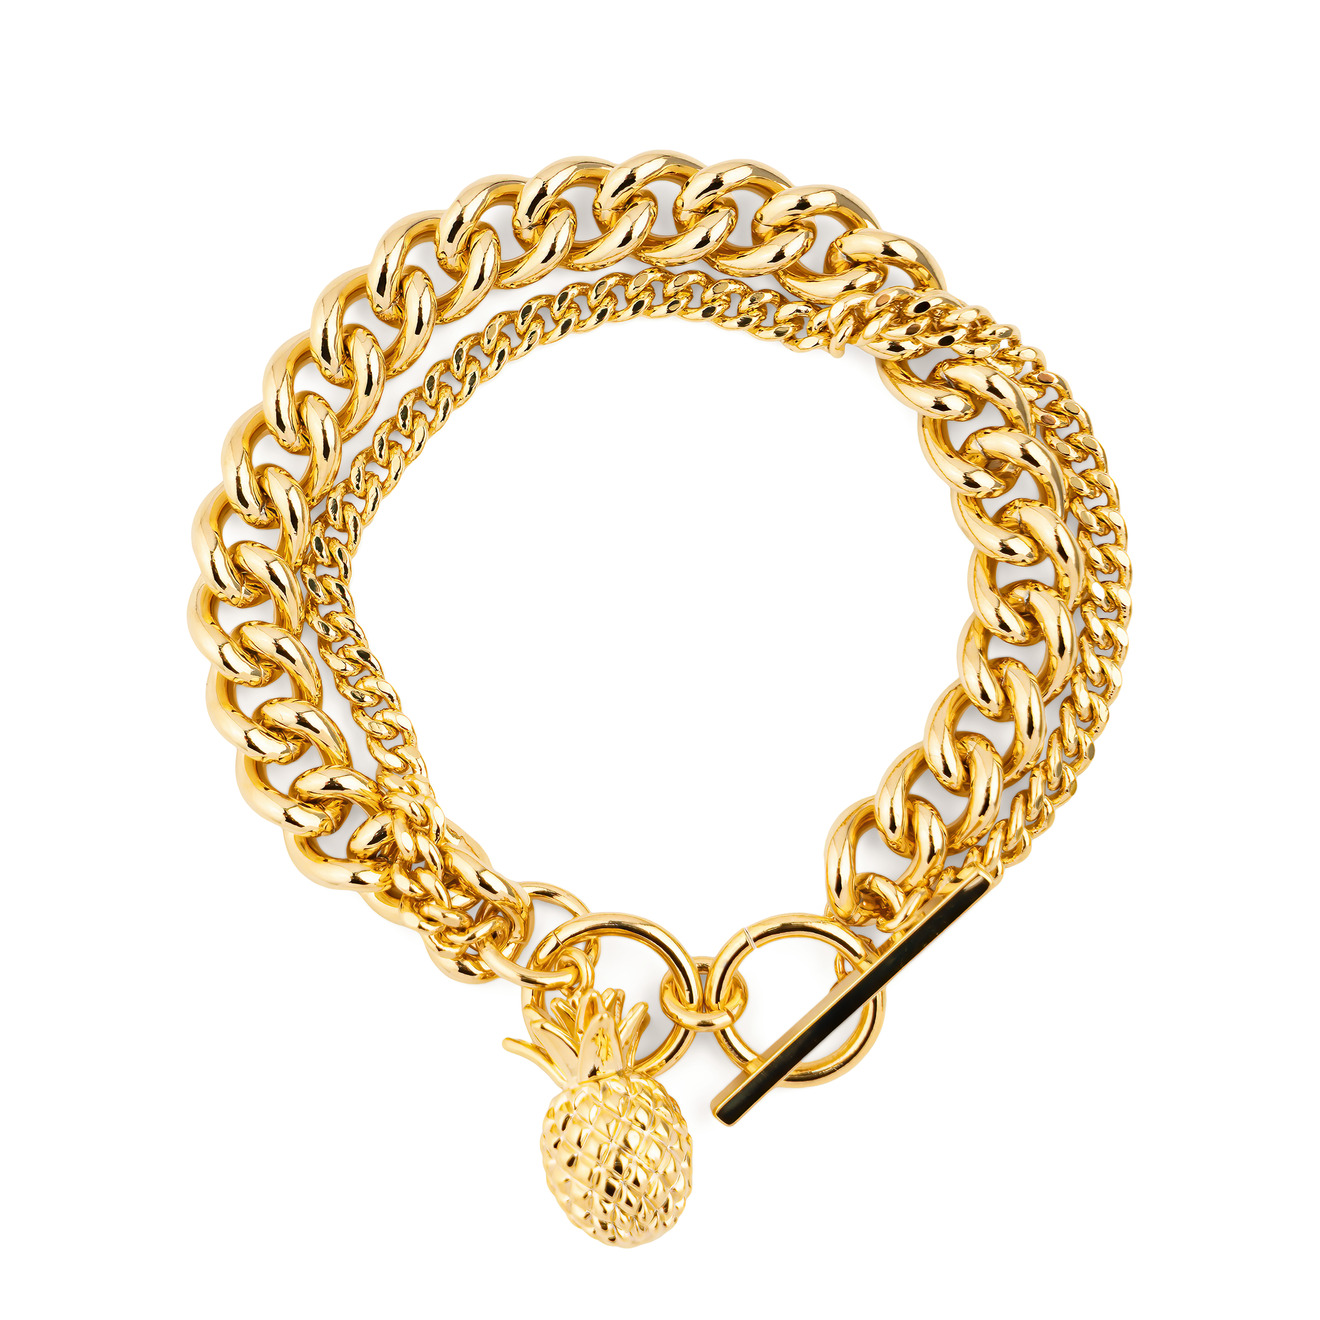 Free Form Jewelry Двойной золотистый браслет с ананасом lisa smith золотистый двойной браслет цепь